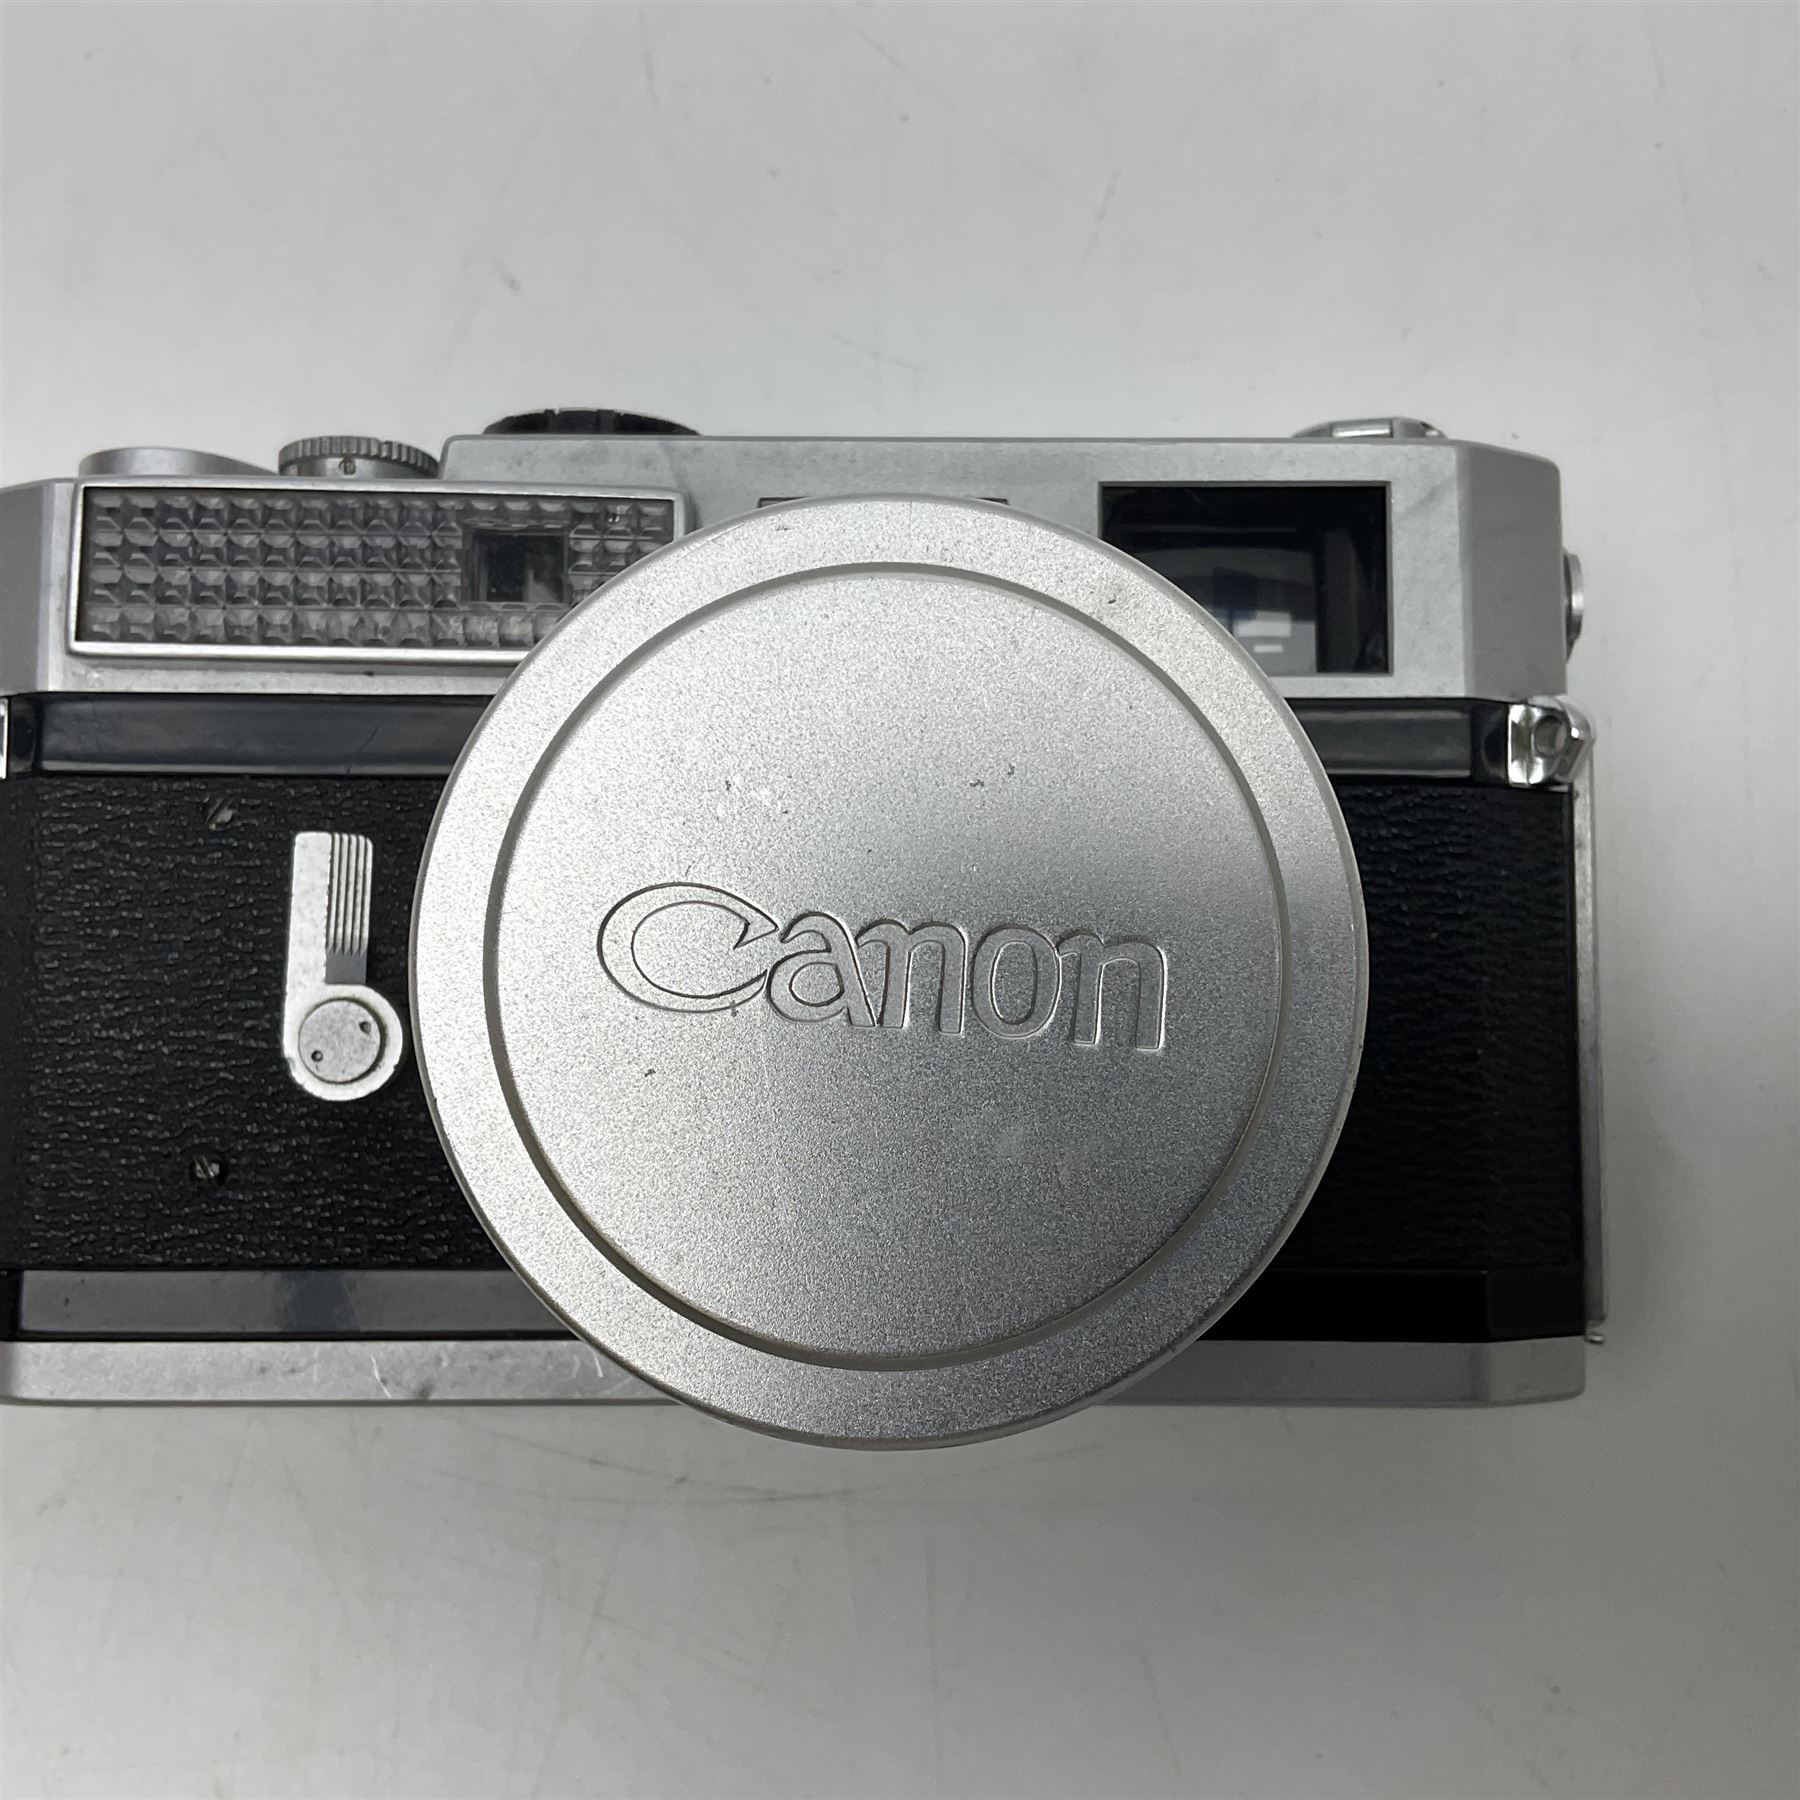 Canon 7 camera body - Image 2 of 7